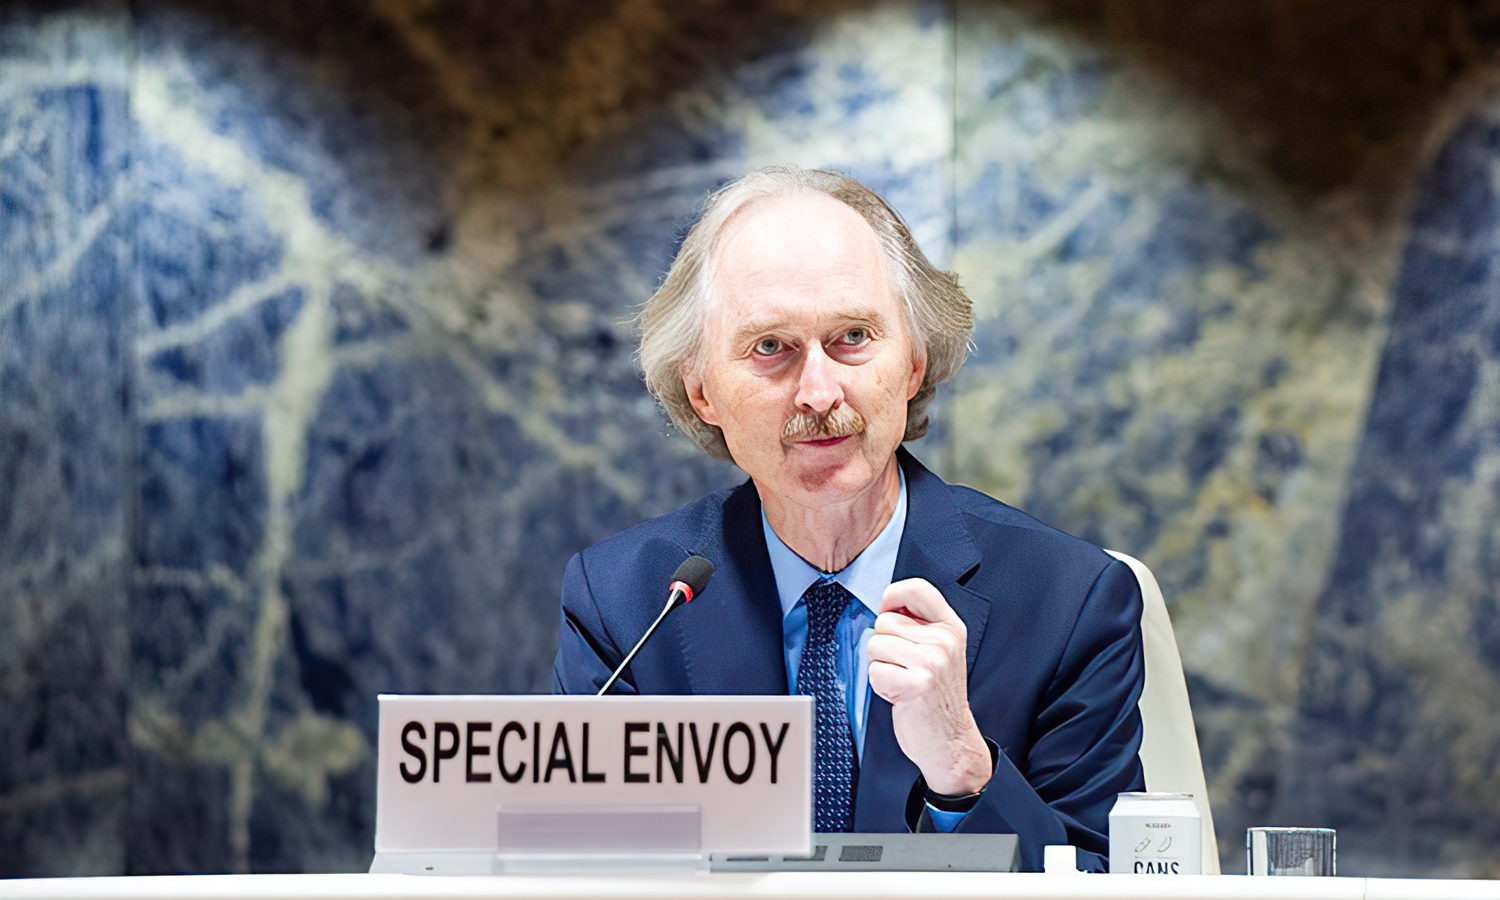 مبعوث الأمم المتحدة الخاص إلى سوريا، غير بيدرسون، يلتقي بأعضاء اللجنة الوسطى الثالثة قبل افتتاح اللجنة الدستورية السورية في جنيف. 17 من تشرين الأول 2021 (فيولين مارتن)